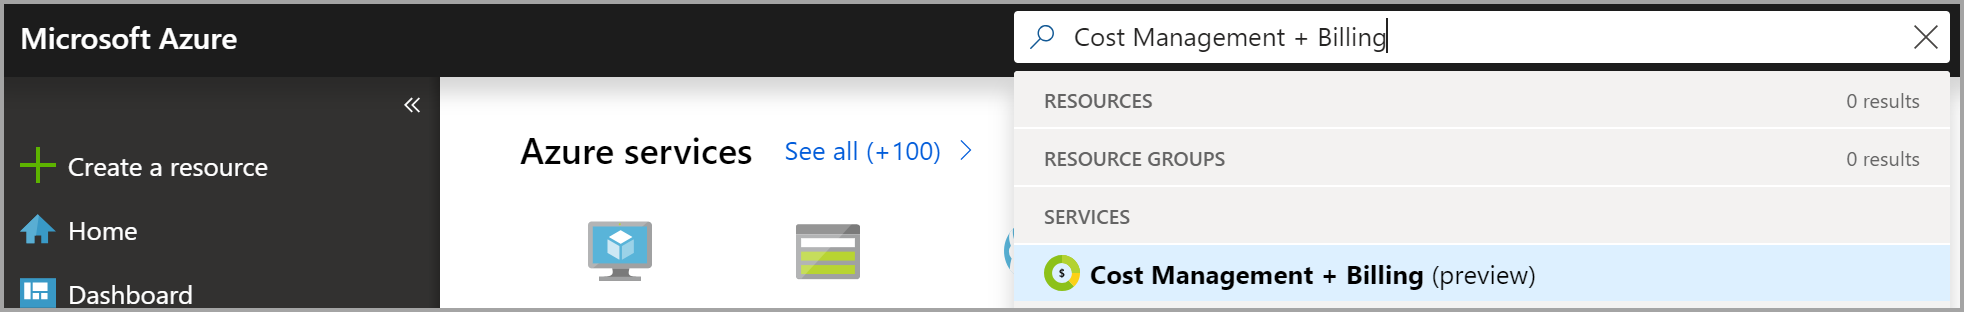 Képernyőkép az Azure Portal keresőmezőjéről a költségkezelés + számlázás keresőkifejezéssel a számlázási tulajdonjog igénylése kapcsán.